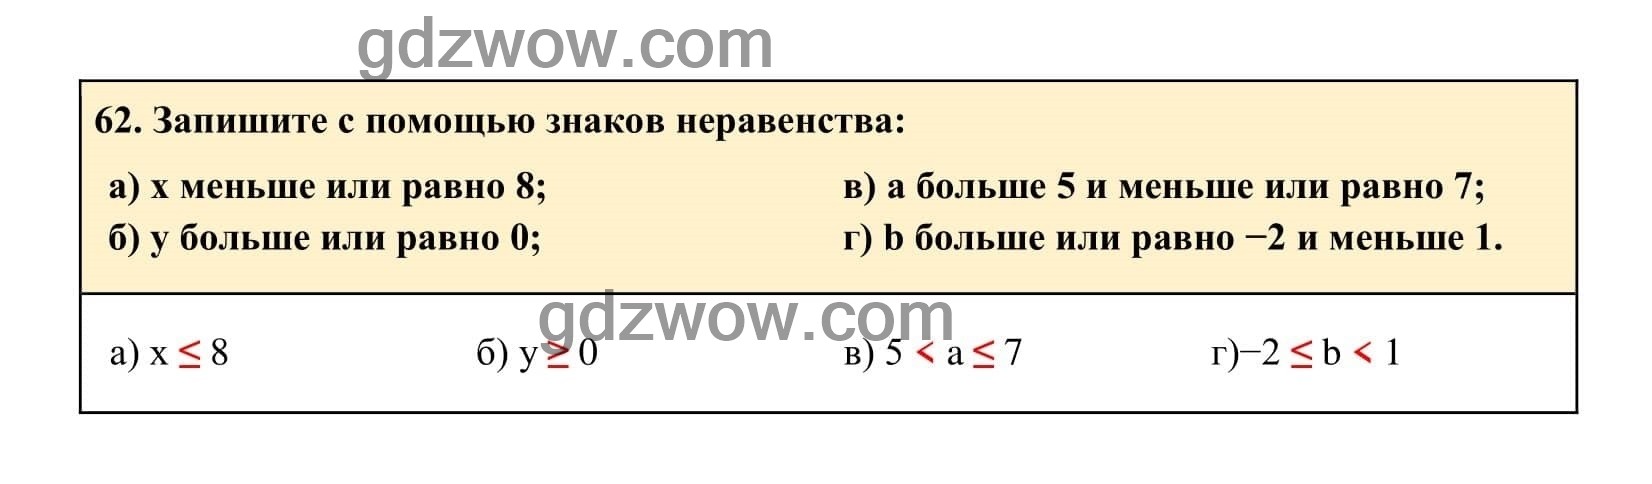 Упражнение 62 - ГДЗ по Алгебре 7 класс Учебник Макарычев (решебник) - GDZwow